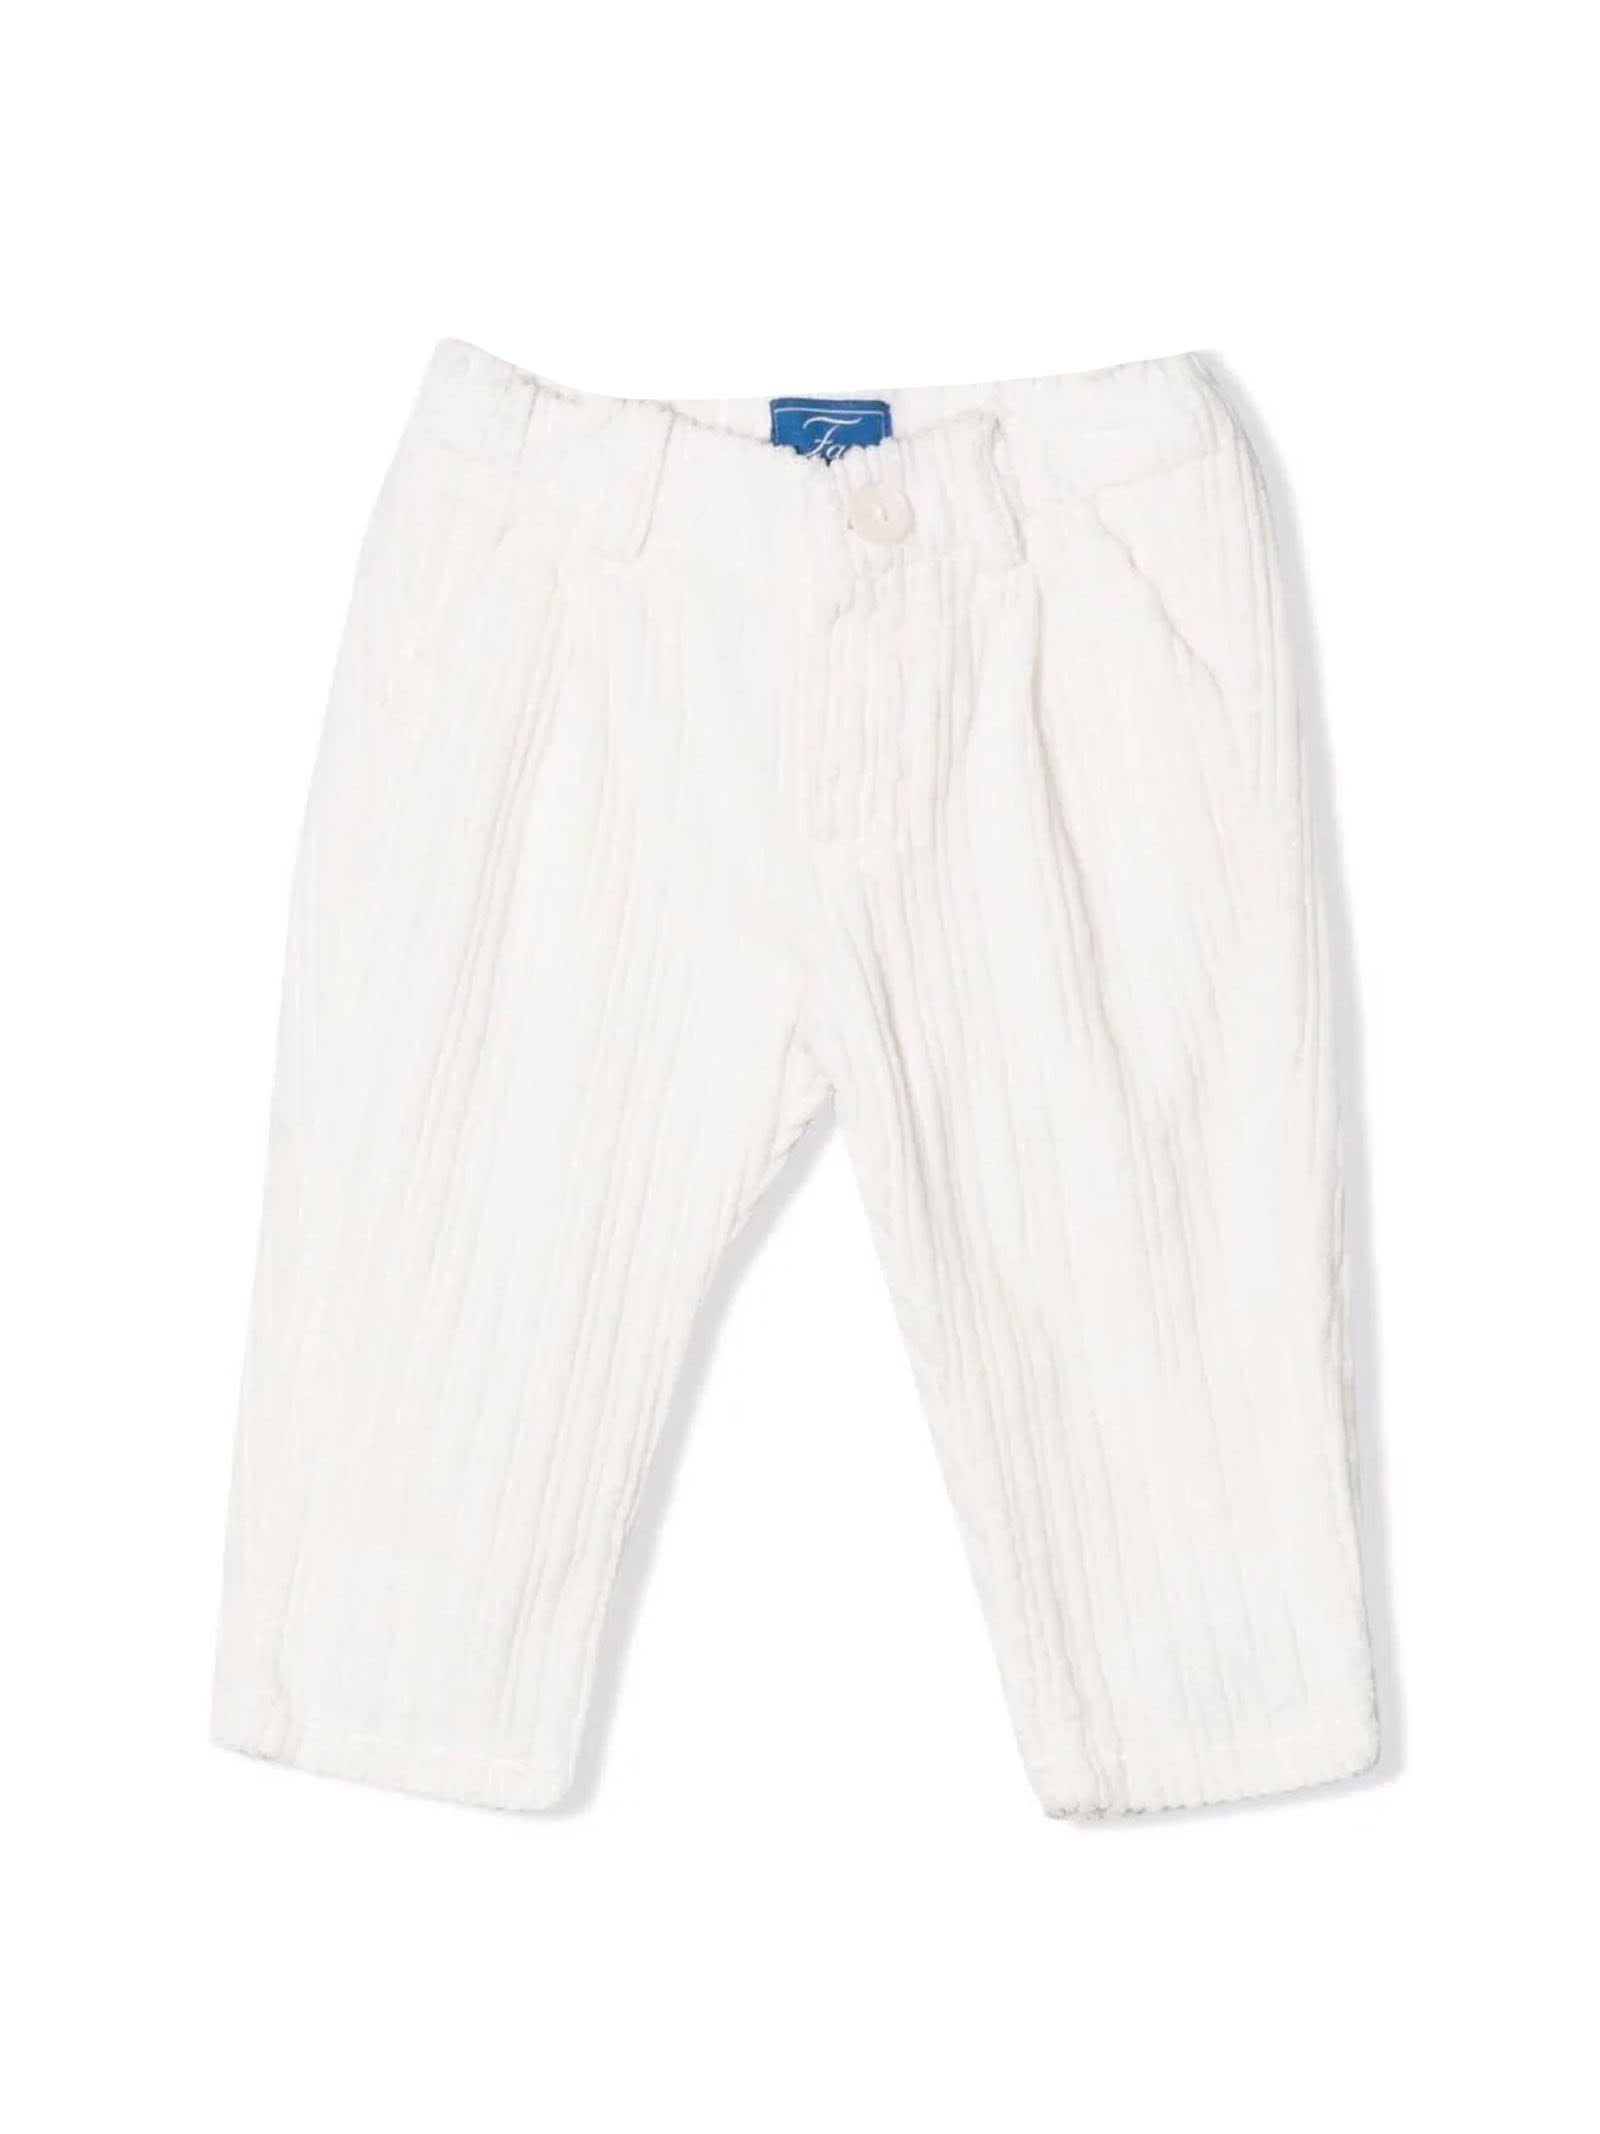 Fay Avorio White Cotton Trousers